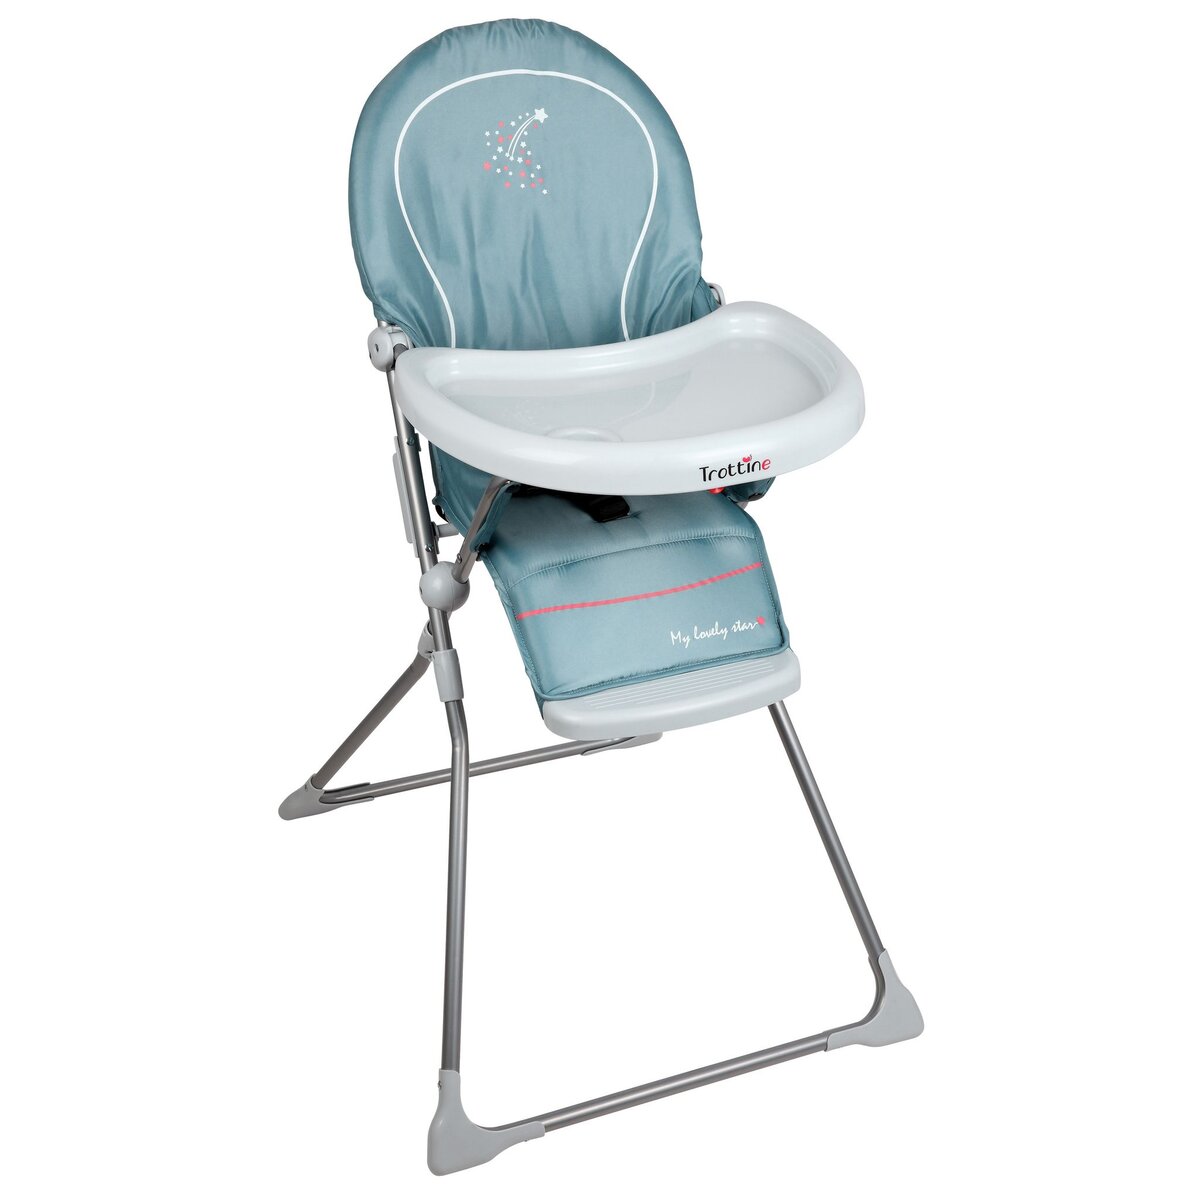 TROTTINE Chaise haute bébé pliage extra plat Keppler